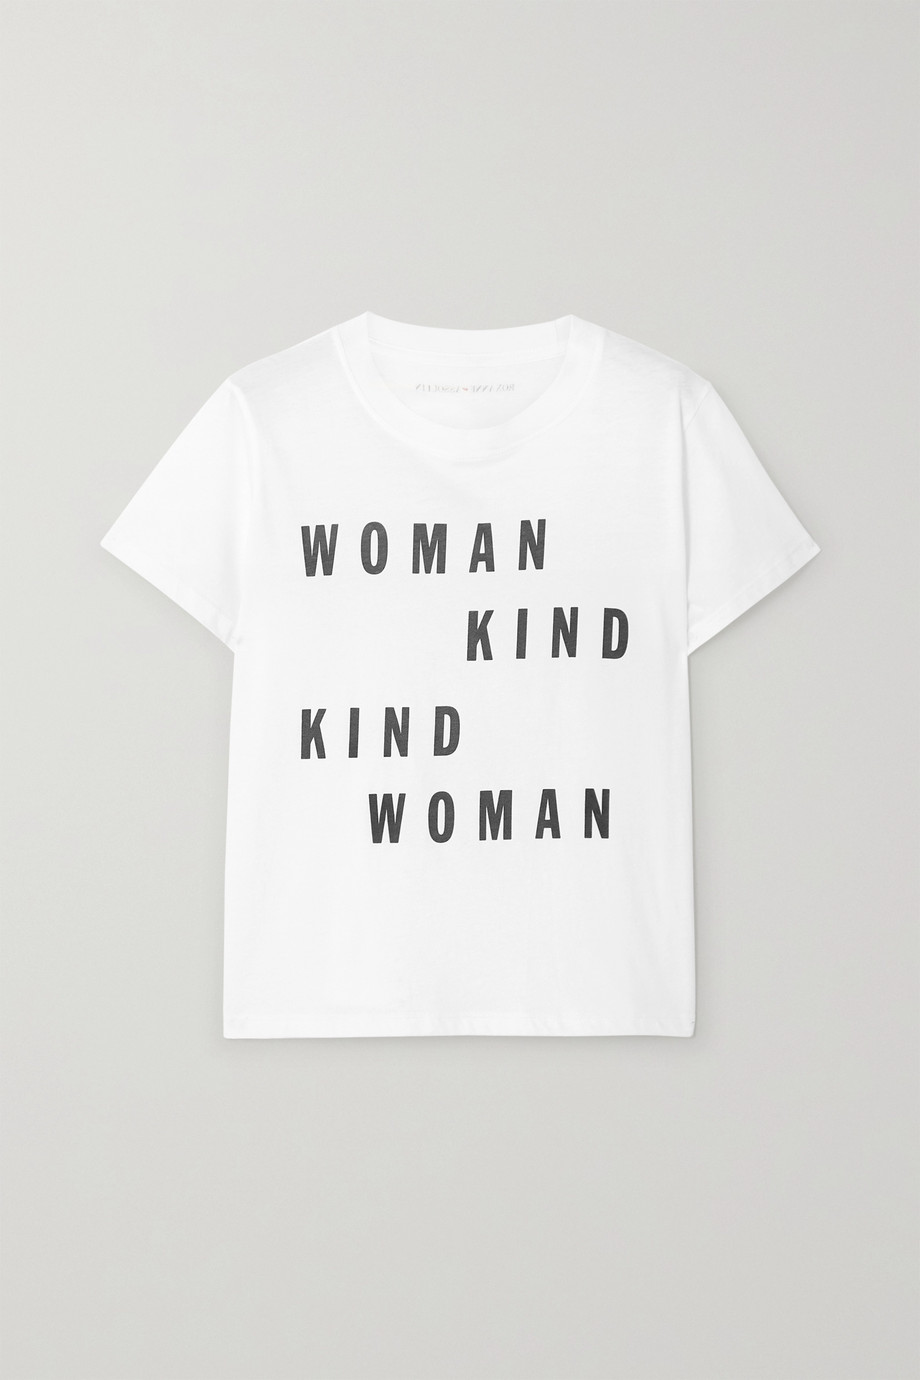 Net-a-Porter x Roxanne Assoulin International Women's Day T-shirt 2020.